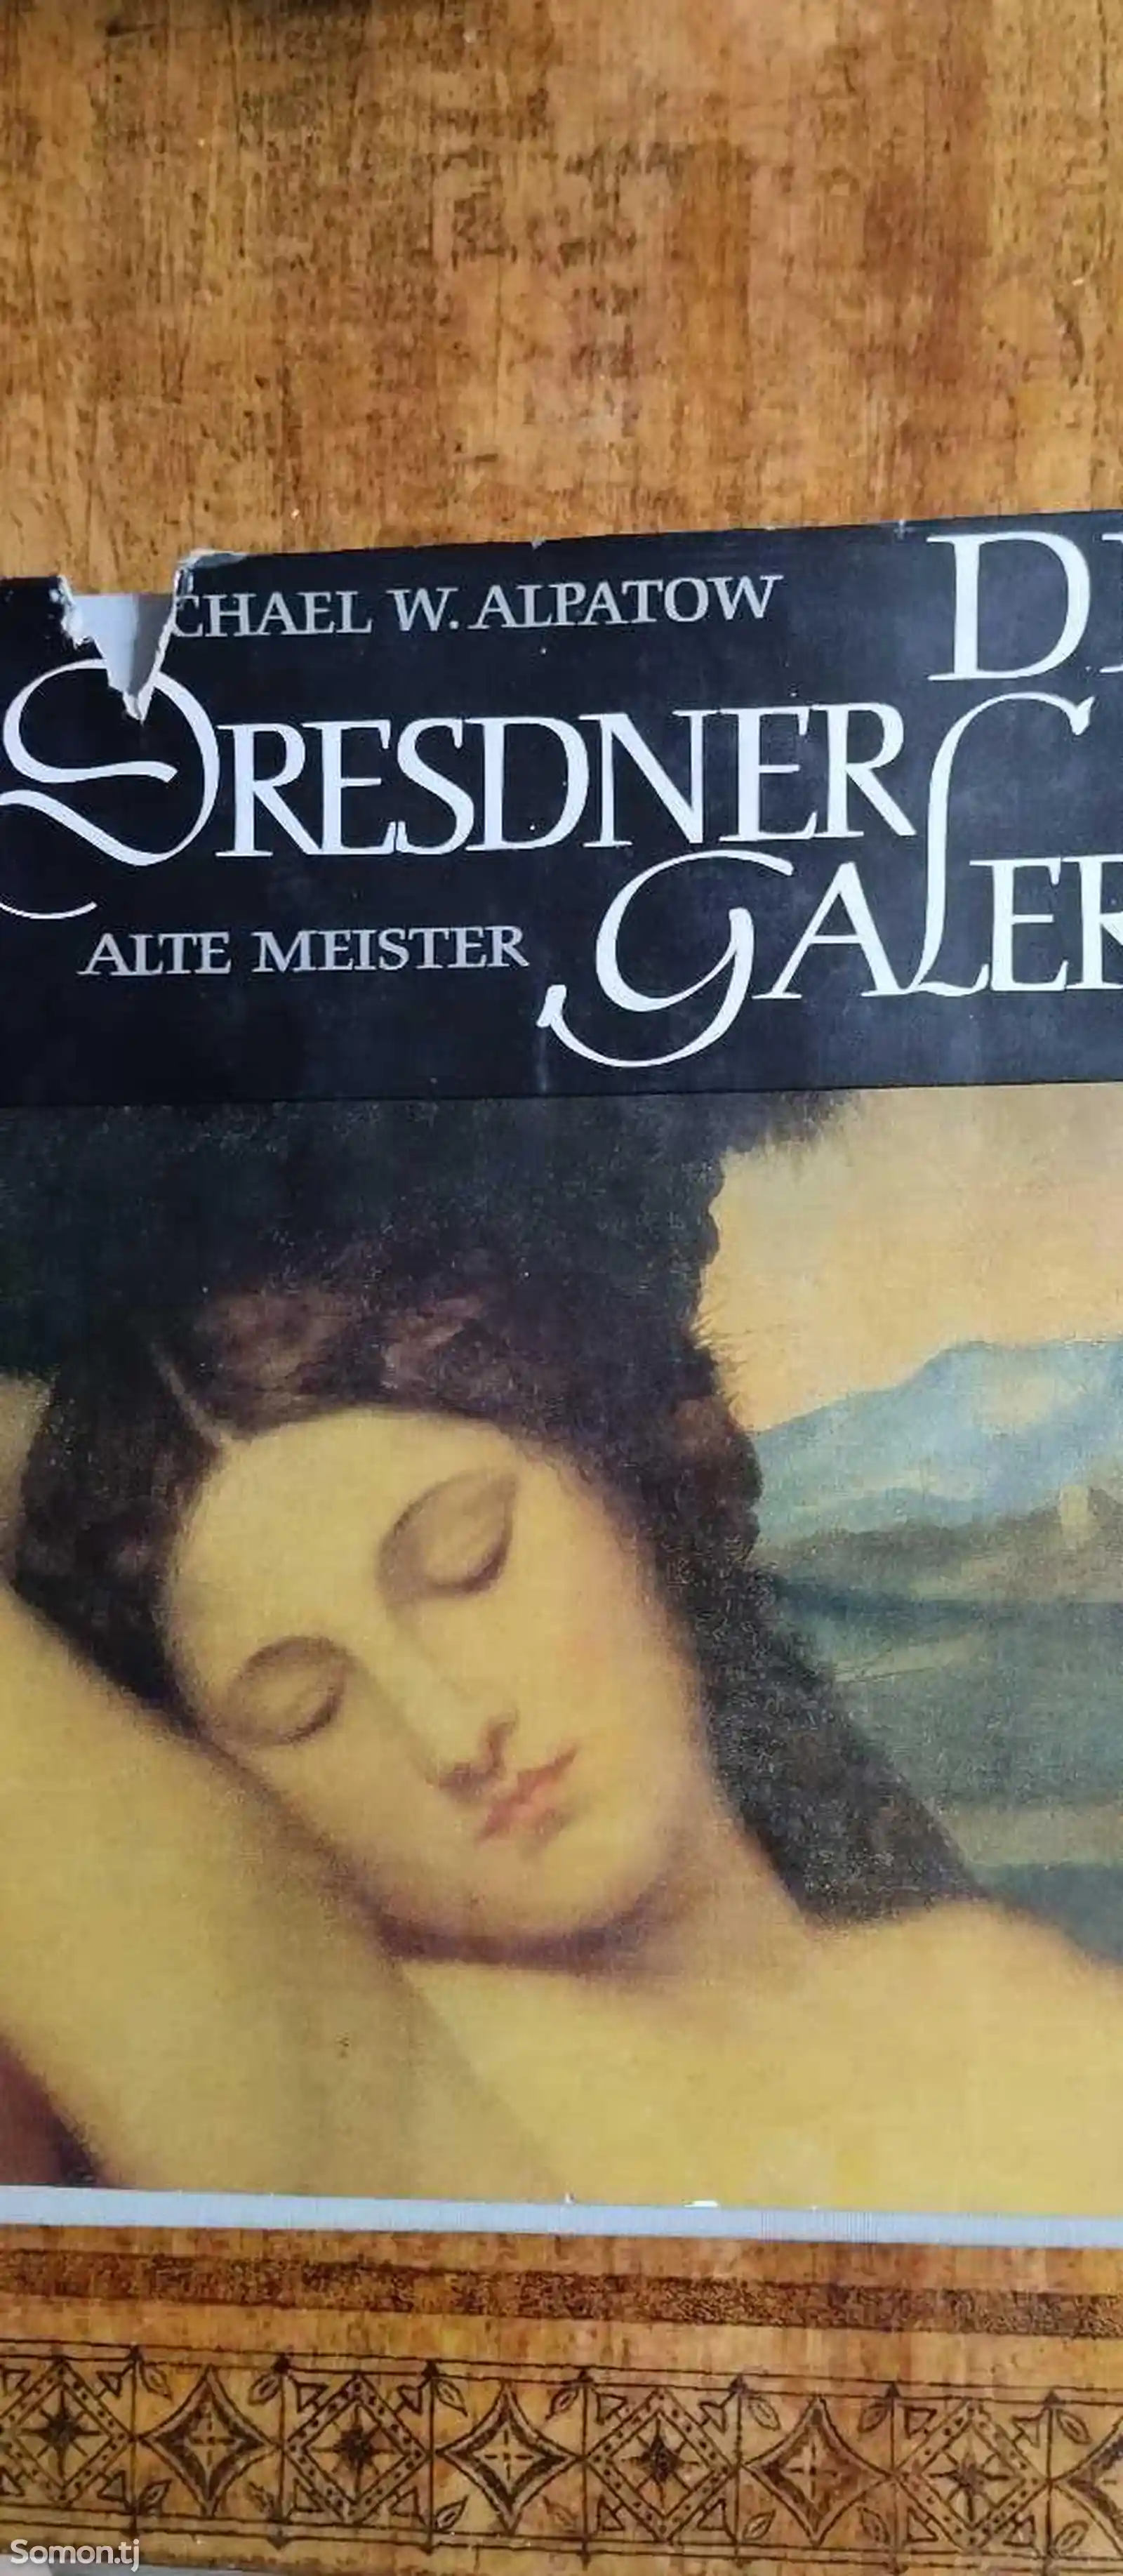 Книга Дрезденская галерея